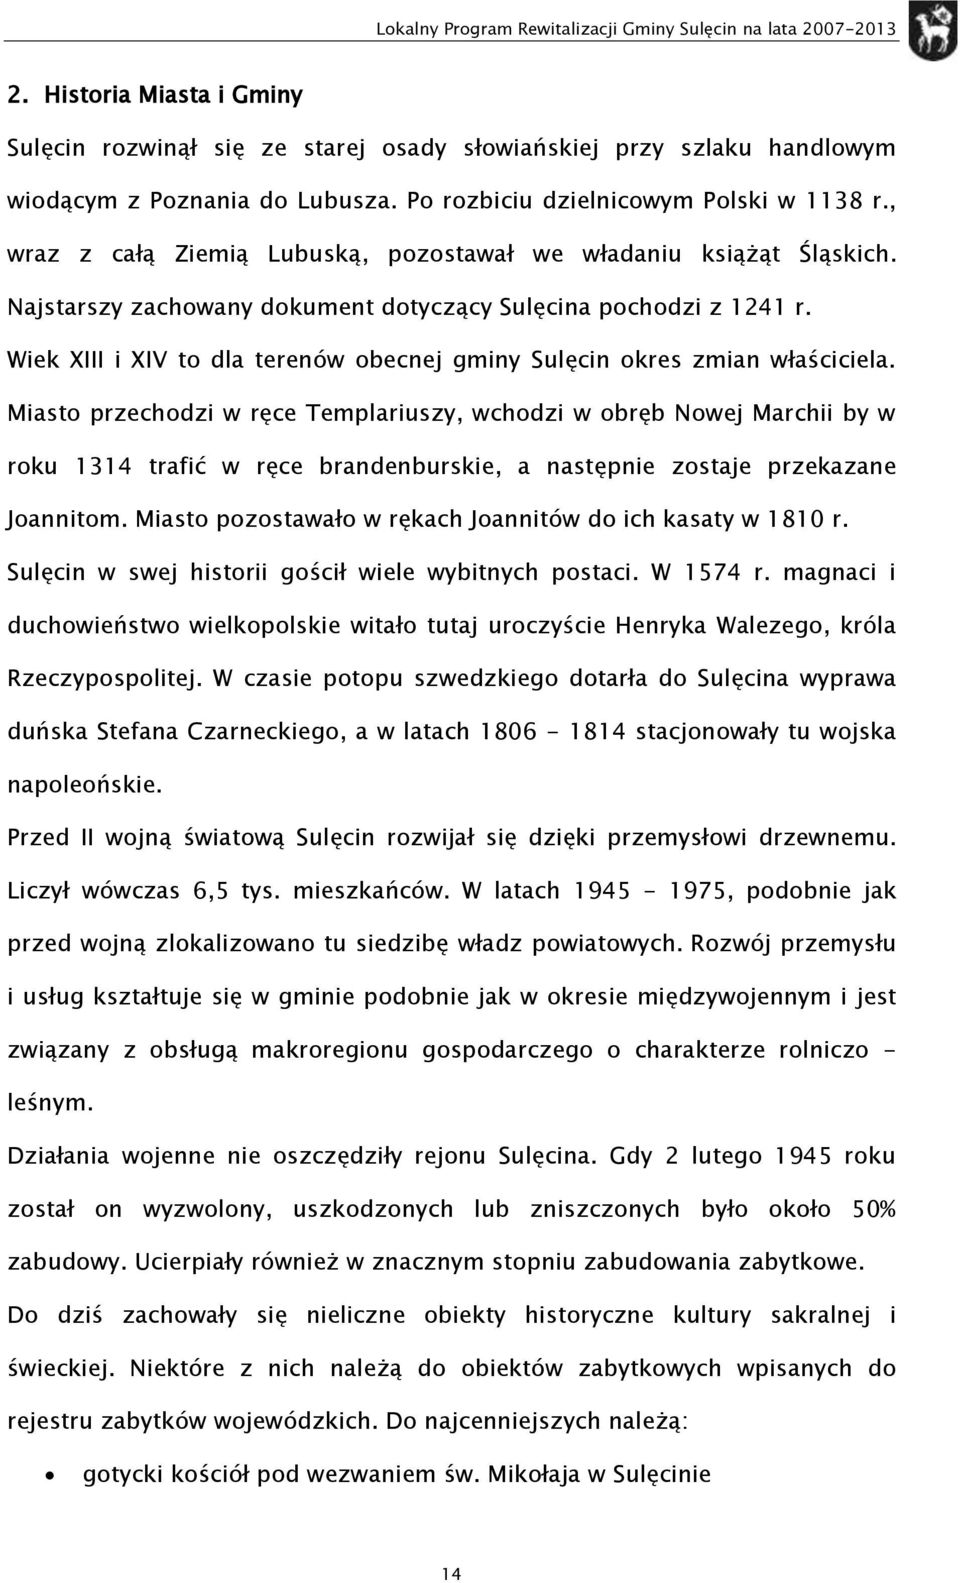 Wiek XIII i XIV t dla terenów becnej gminy Sulęcin kres zmian właściciela.